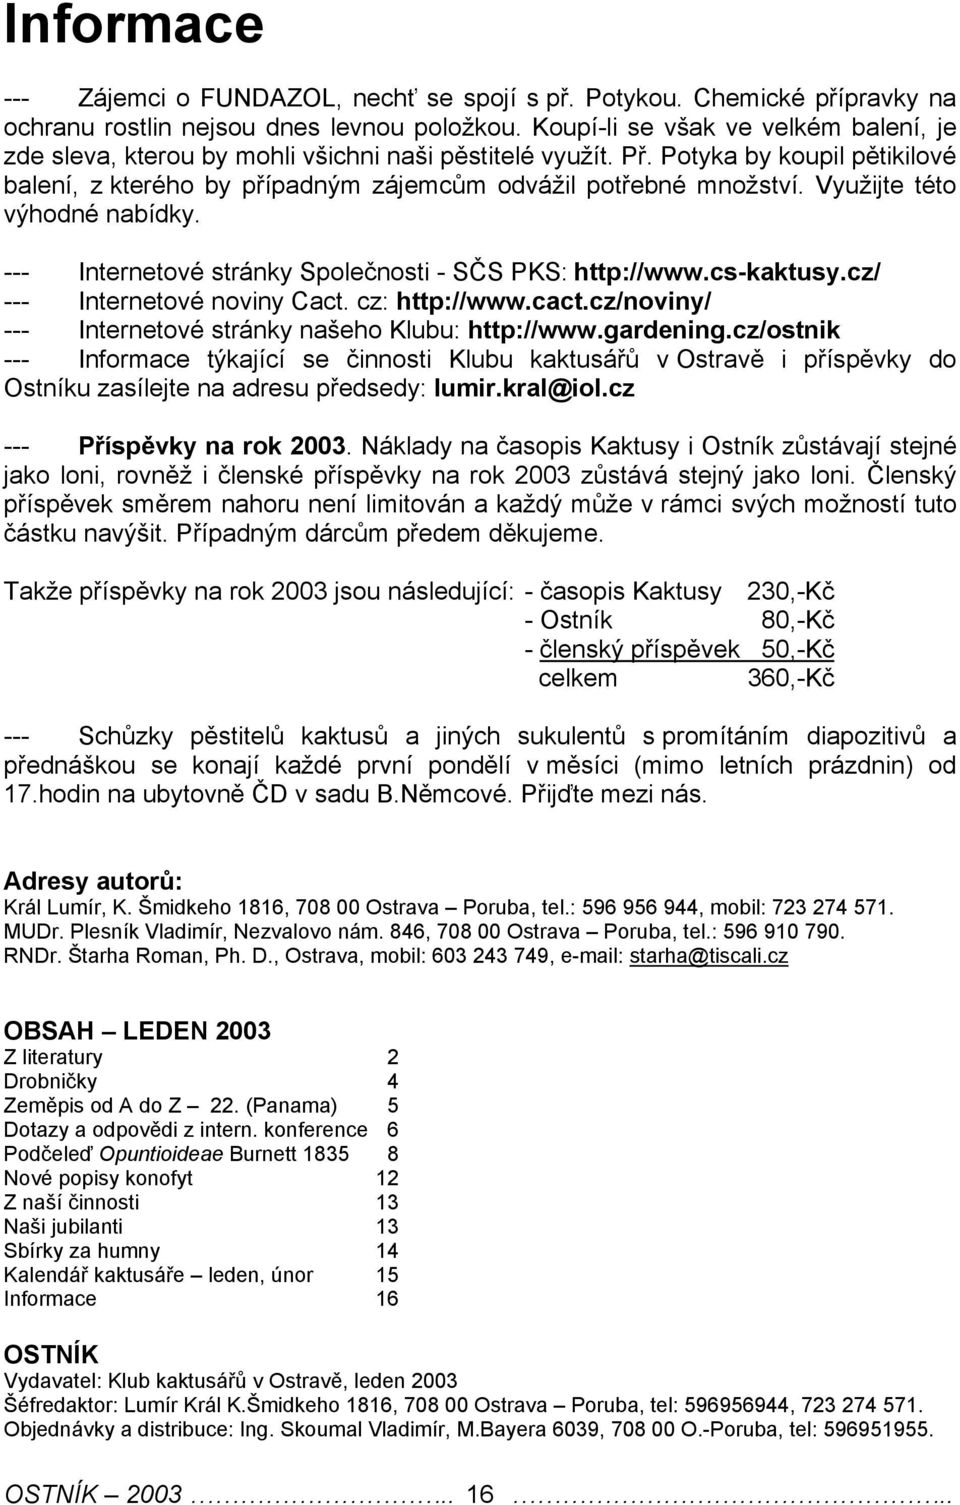 Využijt této výhodné nabídky. --- Intrntové stránky Spolčnosti - SČS PKS: http://www.cs-kaktusy.cz/ --- Intrntové noviny Cact. cz: http://www.cact.